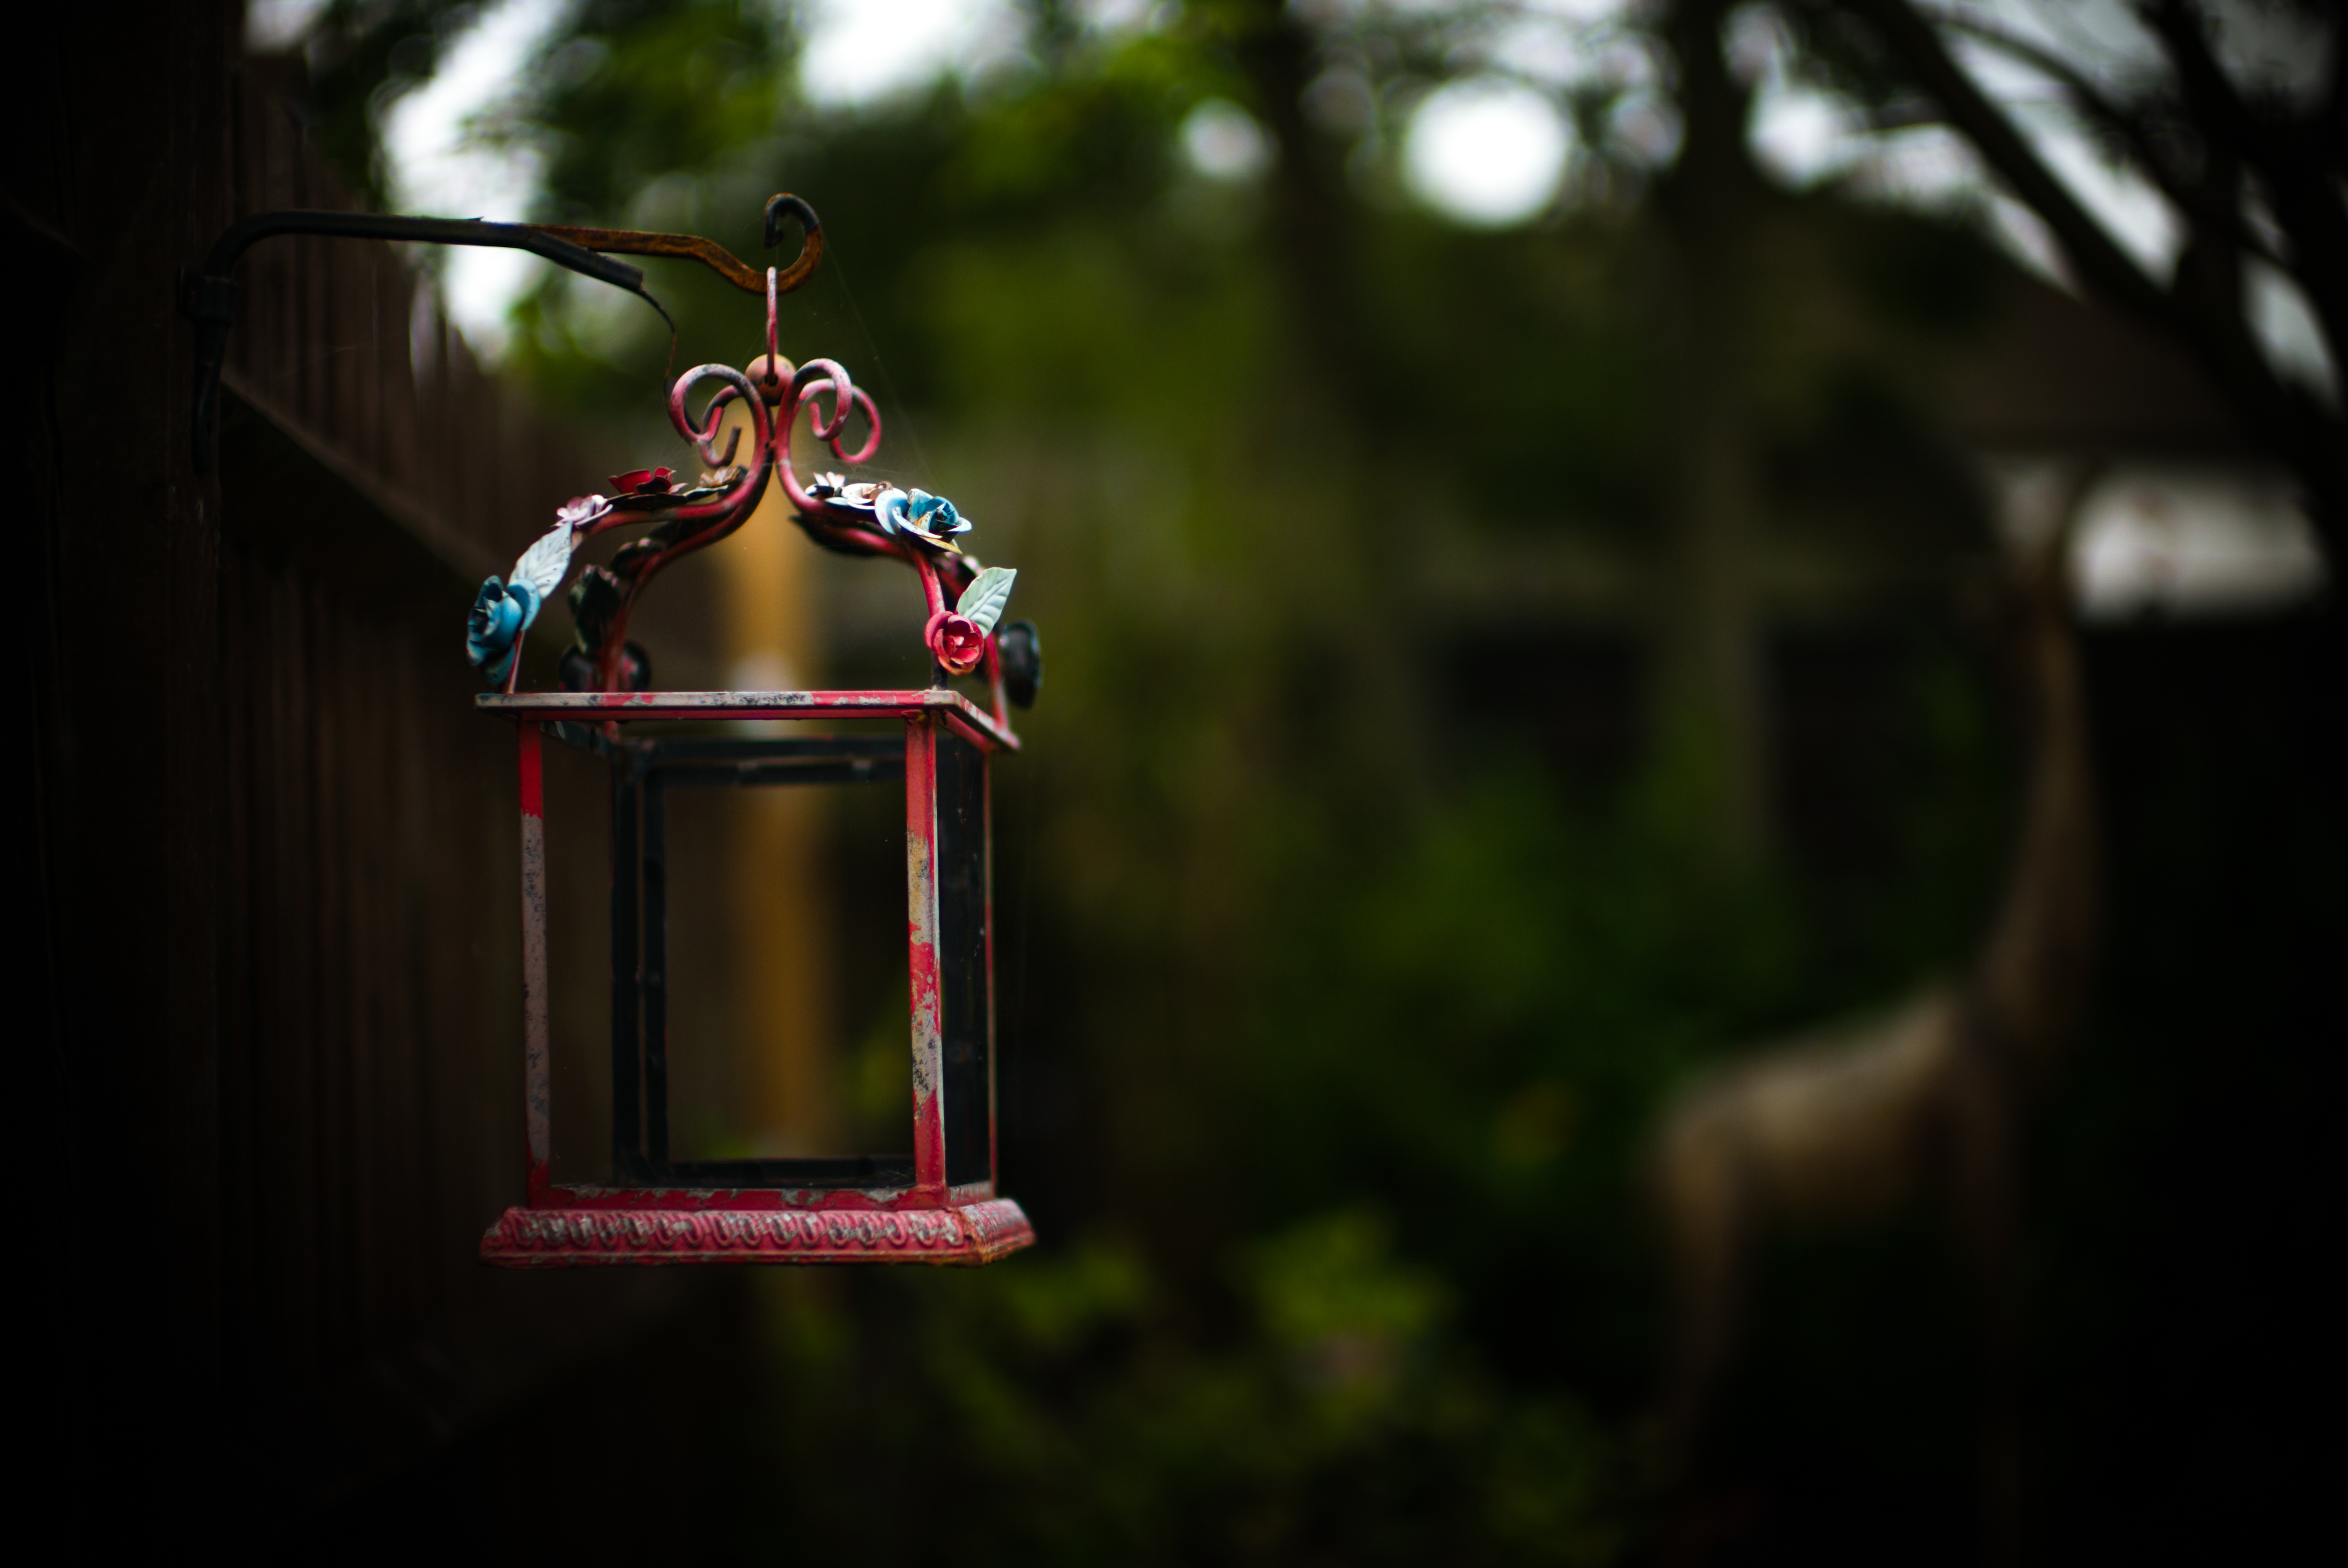 Man Made Lantern HD Wallpaper | Background Image